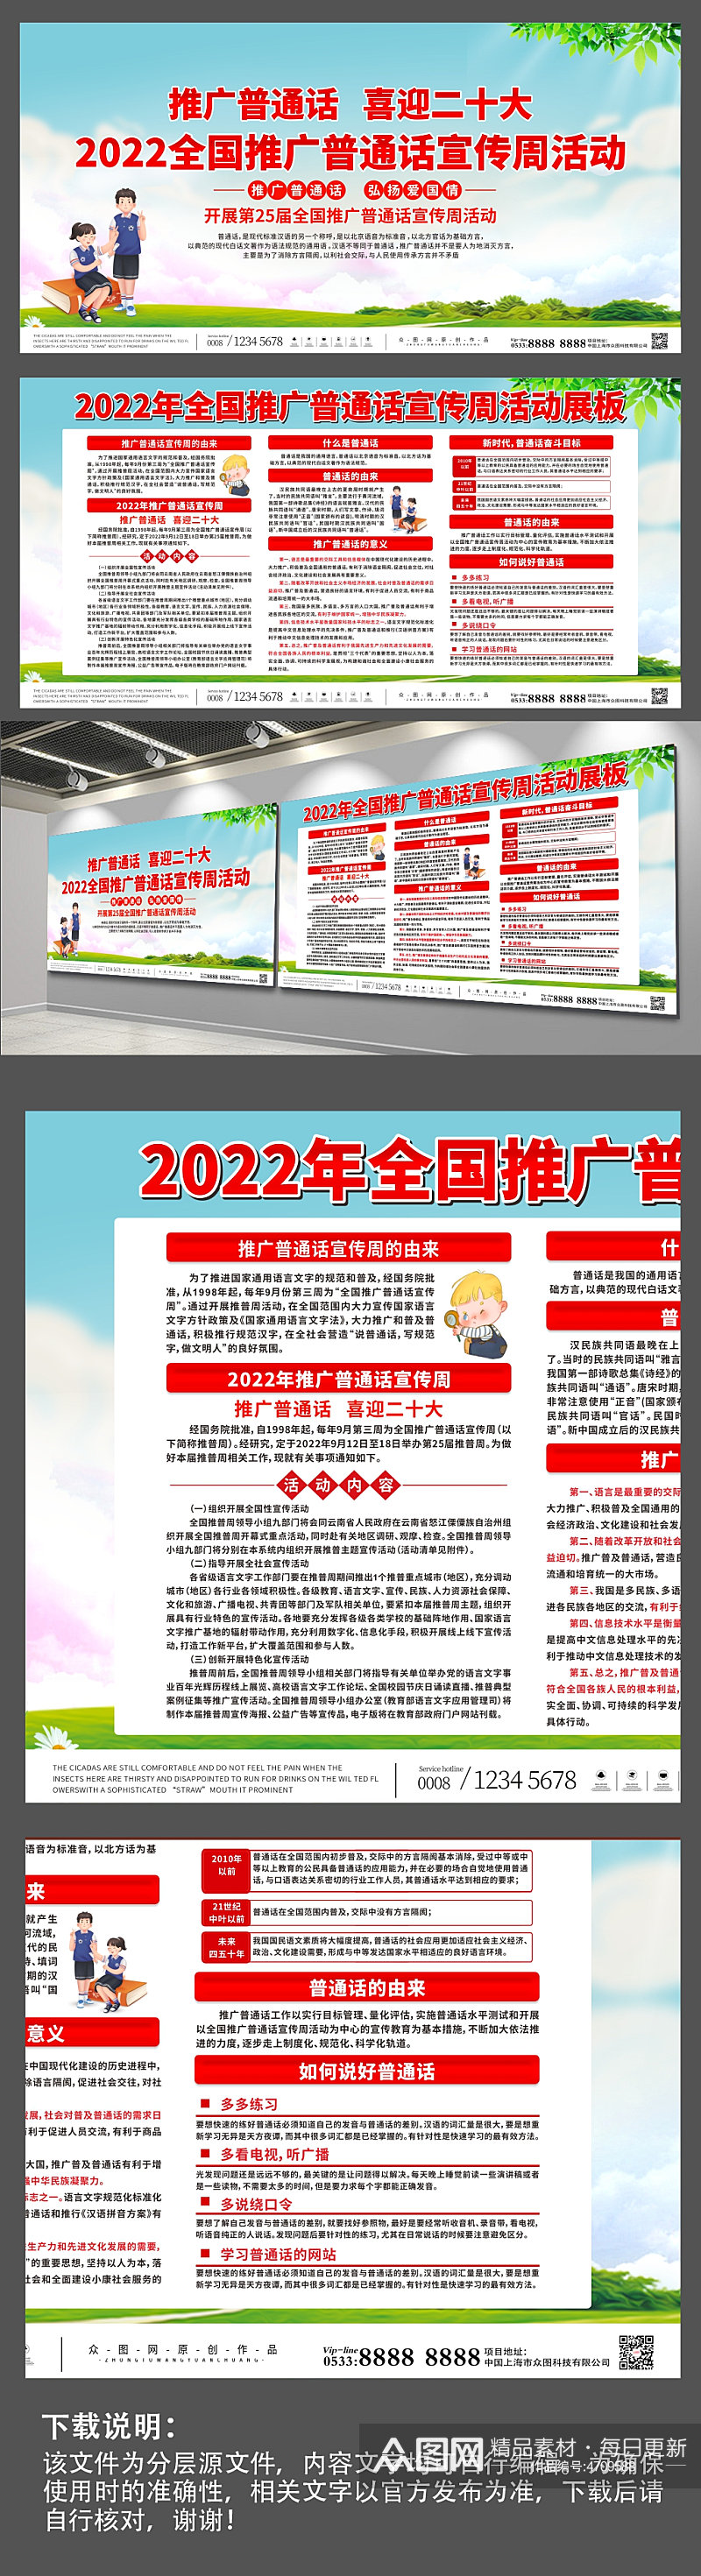 简约2022全国推广普通话宣传周展板素材